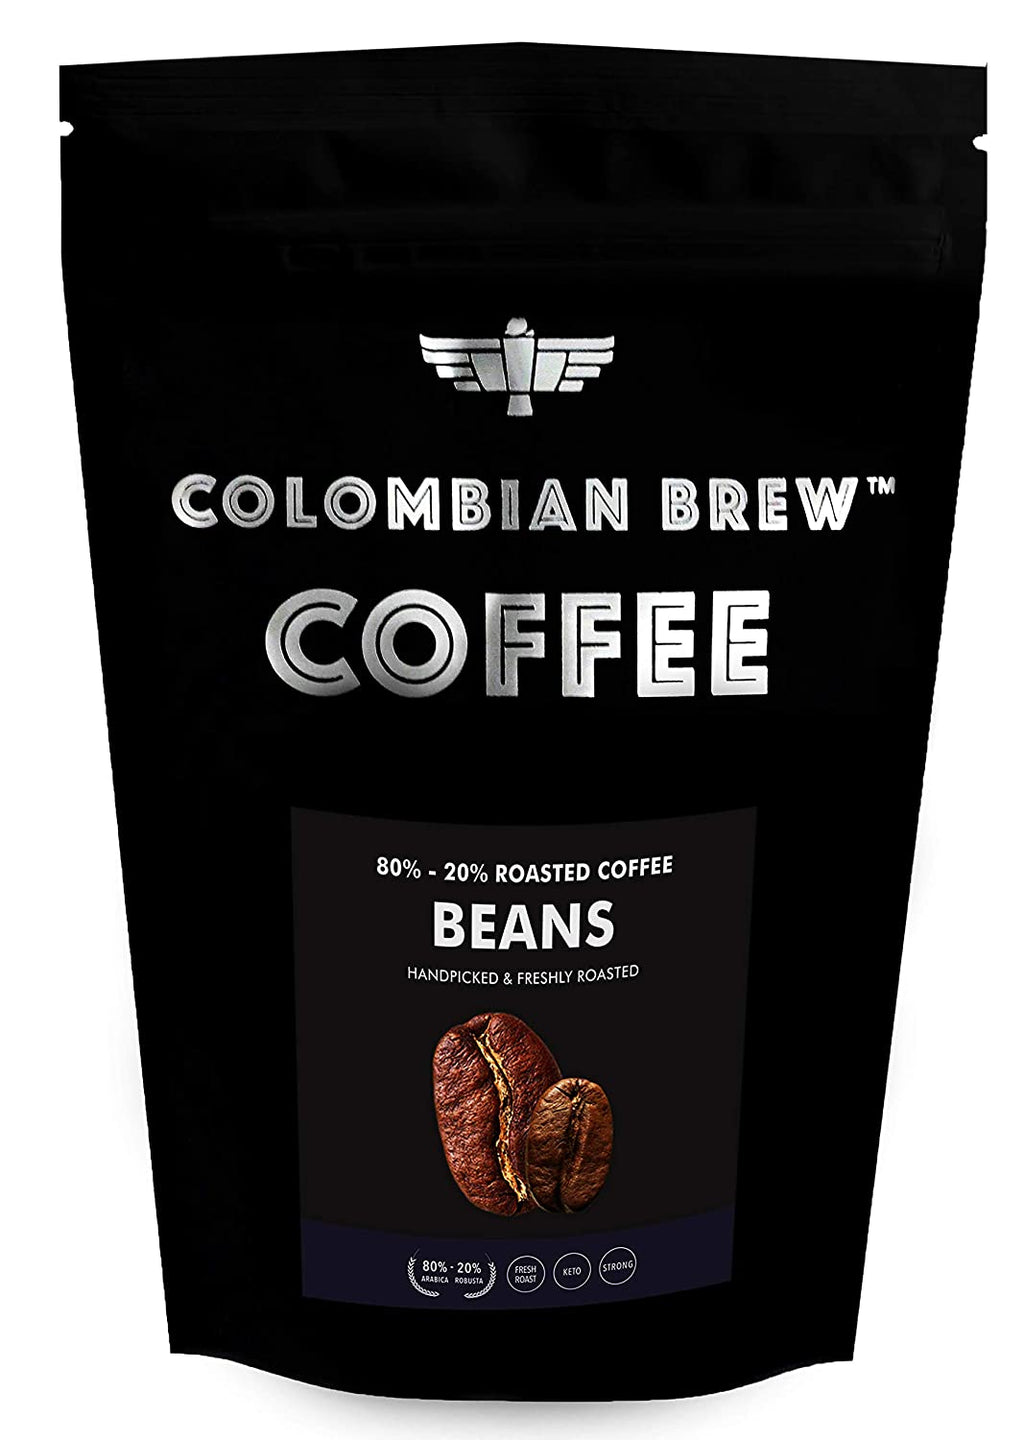 कोलम्बियाई ब्रू कॉफी 80-20 अरेबिका रोबस्टा भुनी हुई कॉफी बीन्स, 1 किलो